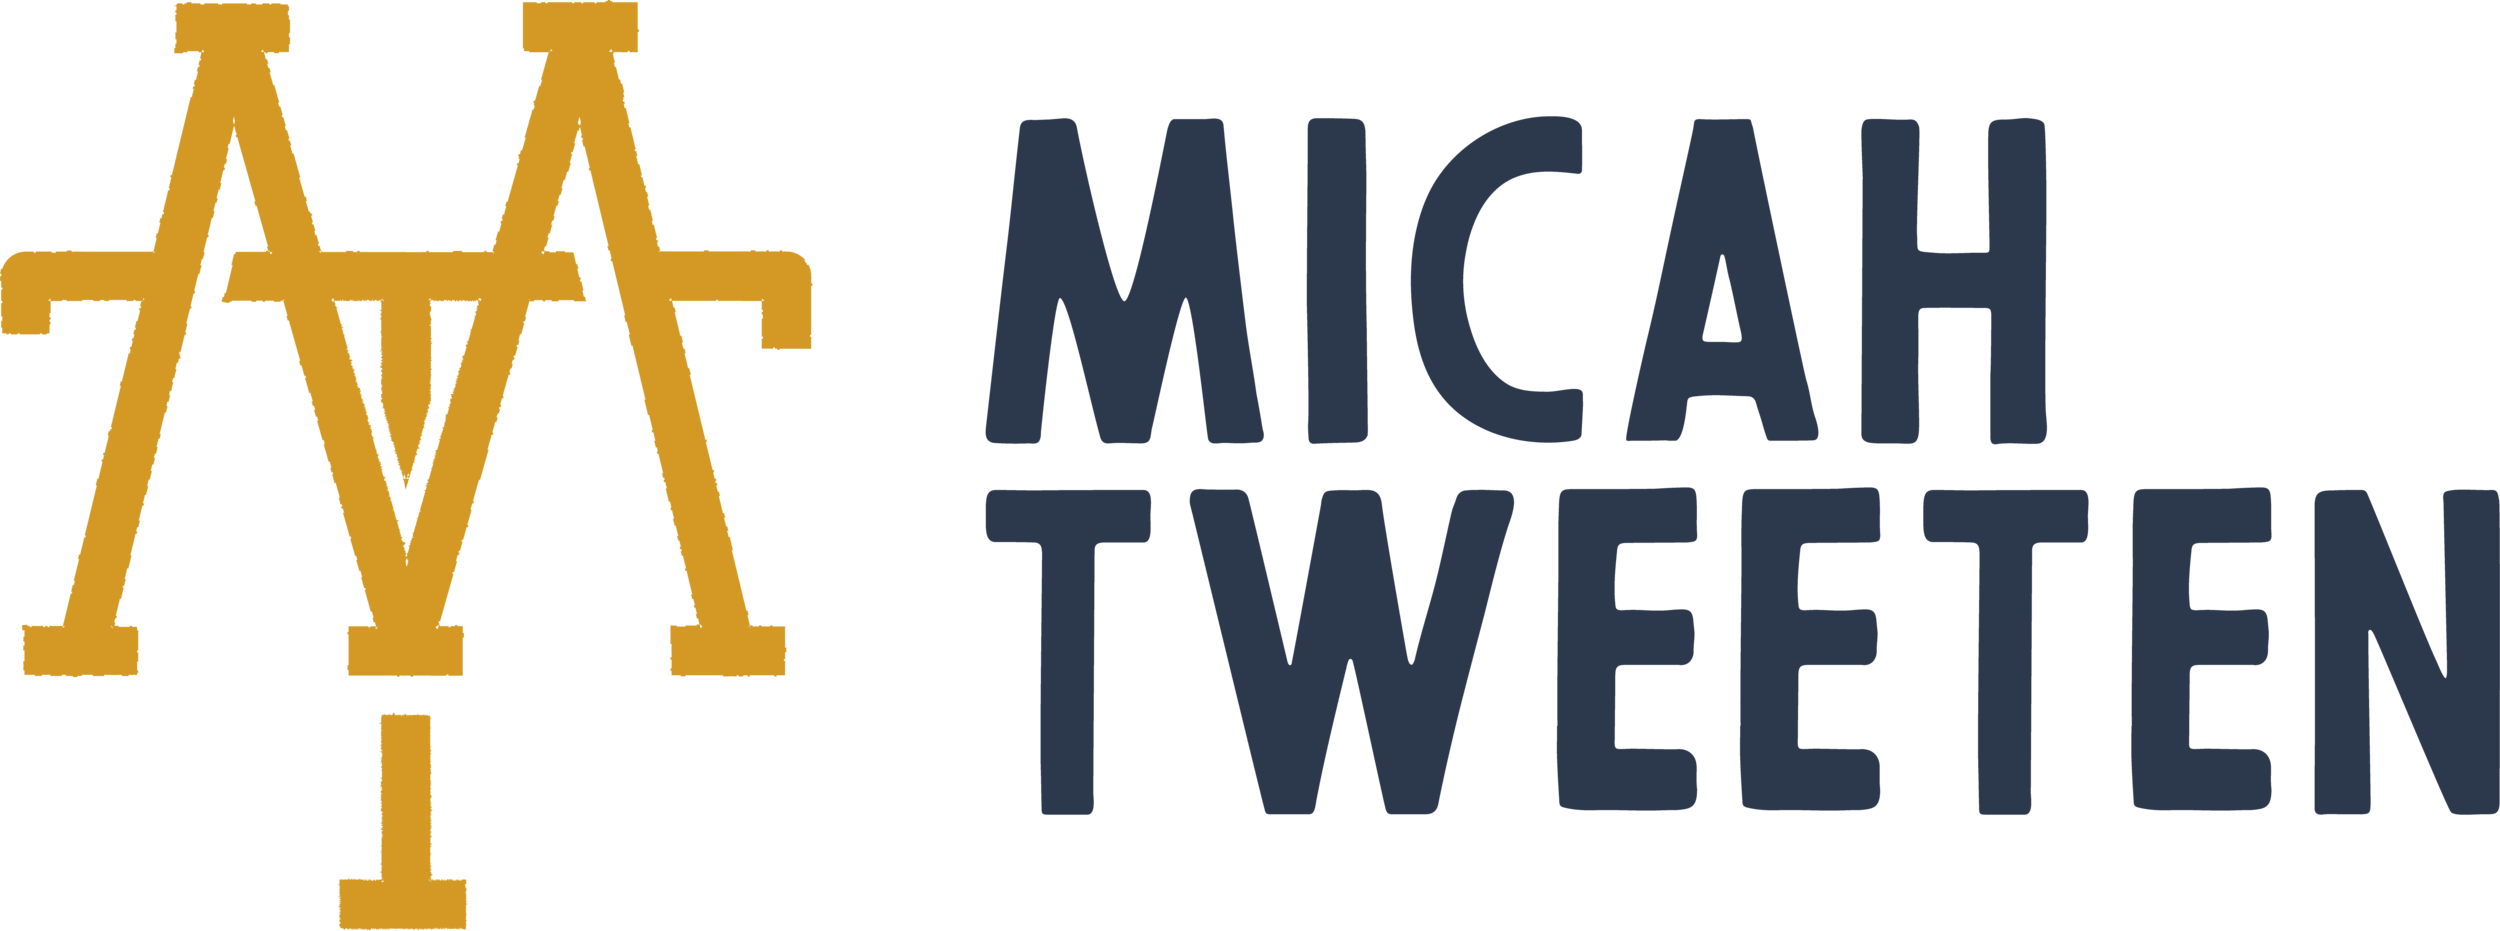 Micah Tweeten | Designer